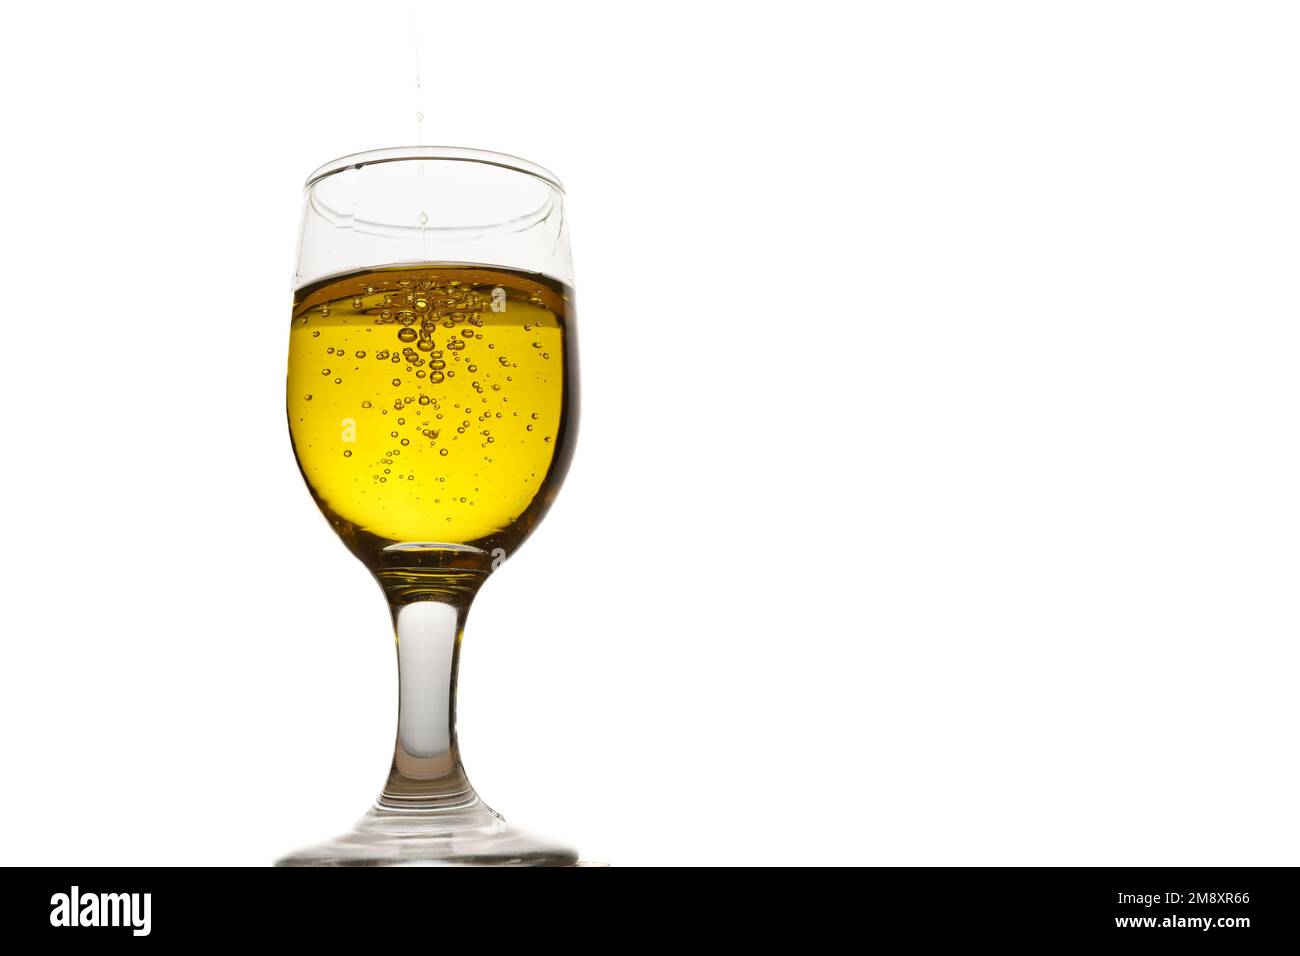 Primer plano de una taza de vidrio con aceite de oliva virgen extra con burbujas sobre un fondo blanco Foto de stock